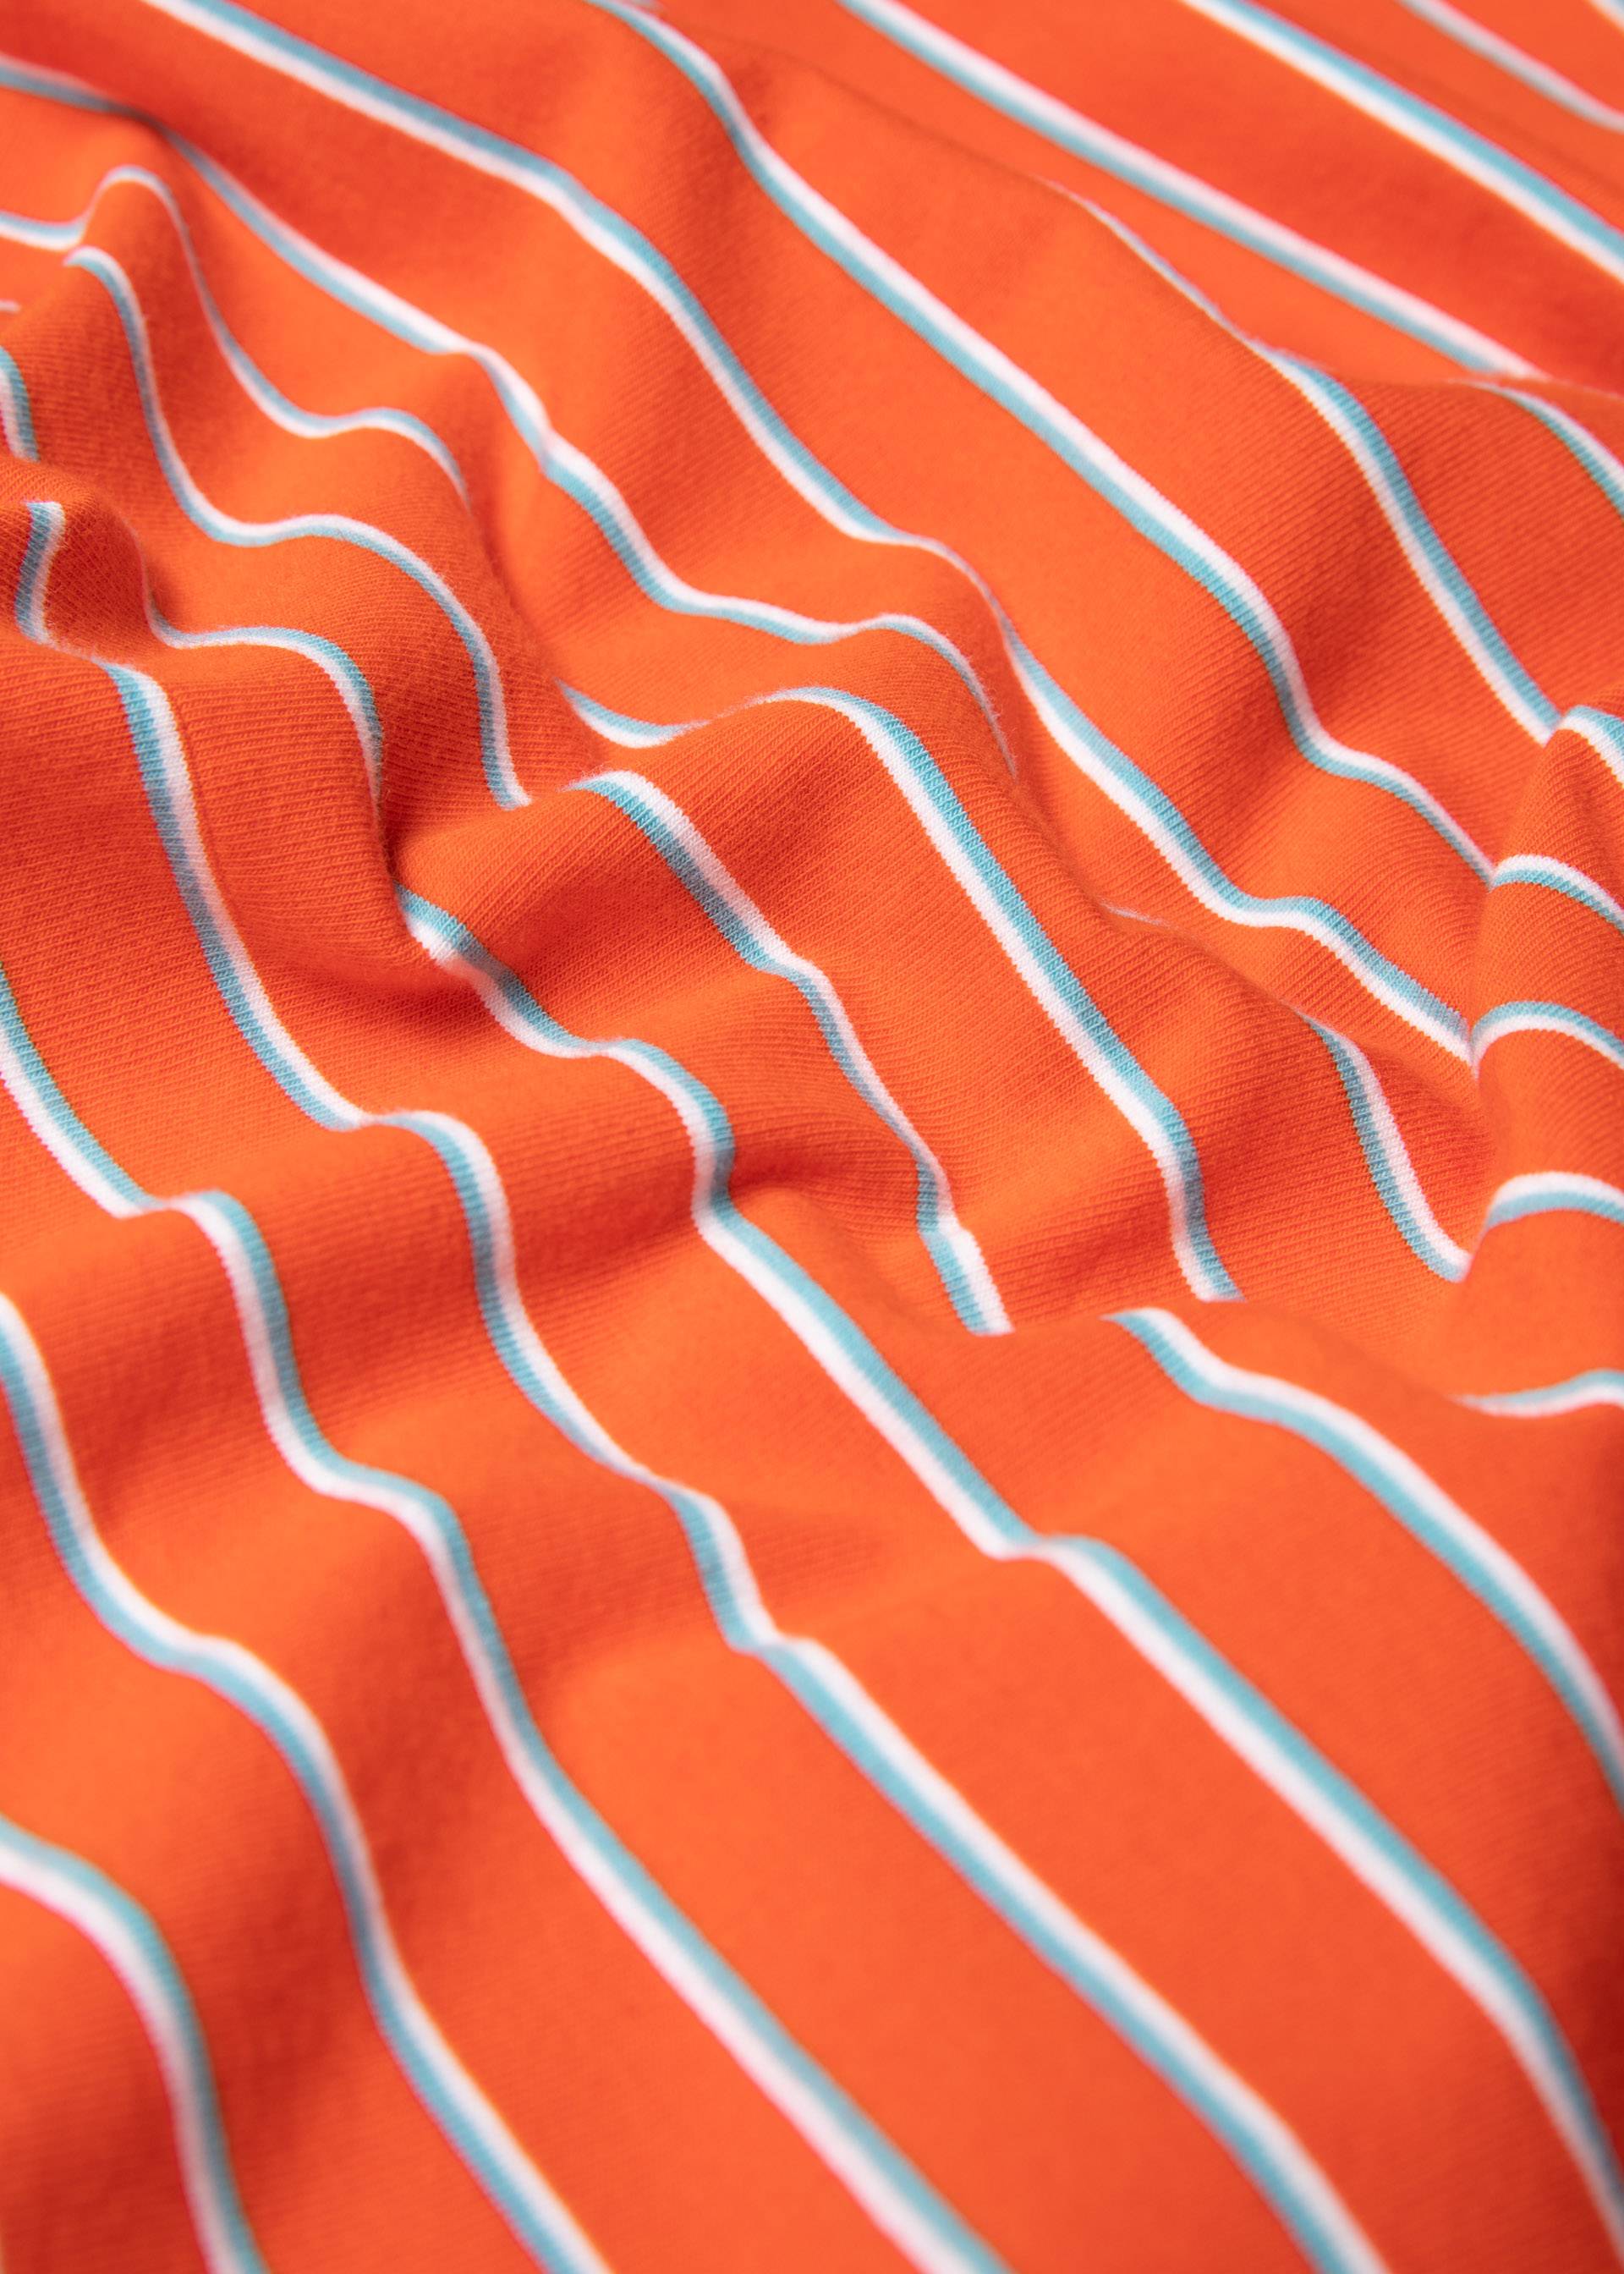 T-Shirt Vintage Heart, delightful stripes, Tops, Orange